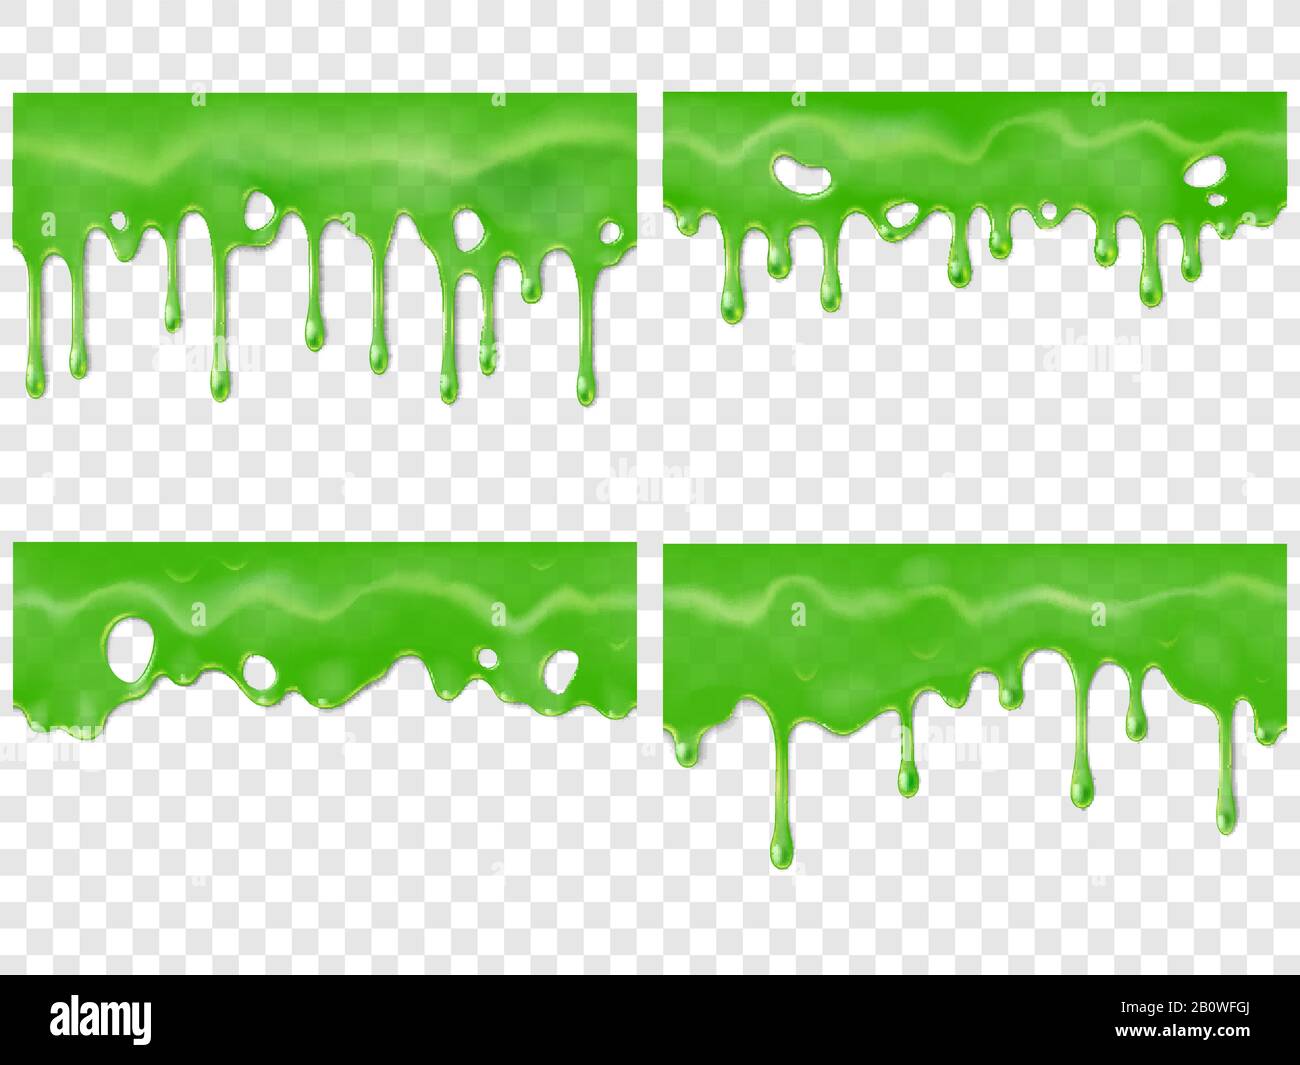 Realistischer Dripping Slime. Nahtloser grüner Fleck von Drippings Gifttropfen. 3D-realistische Vektordarstellung für Schleimtropfentropfen Stock Vektor